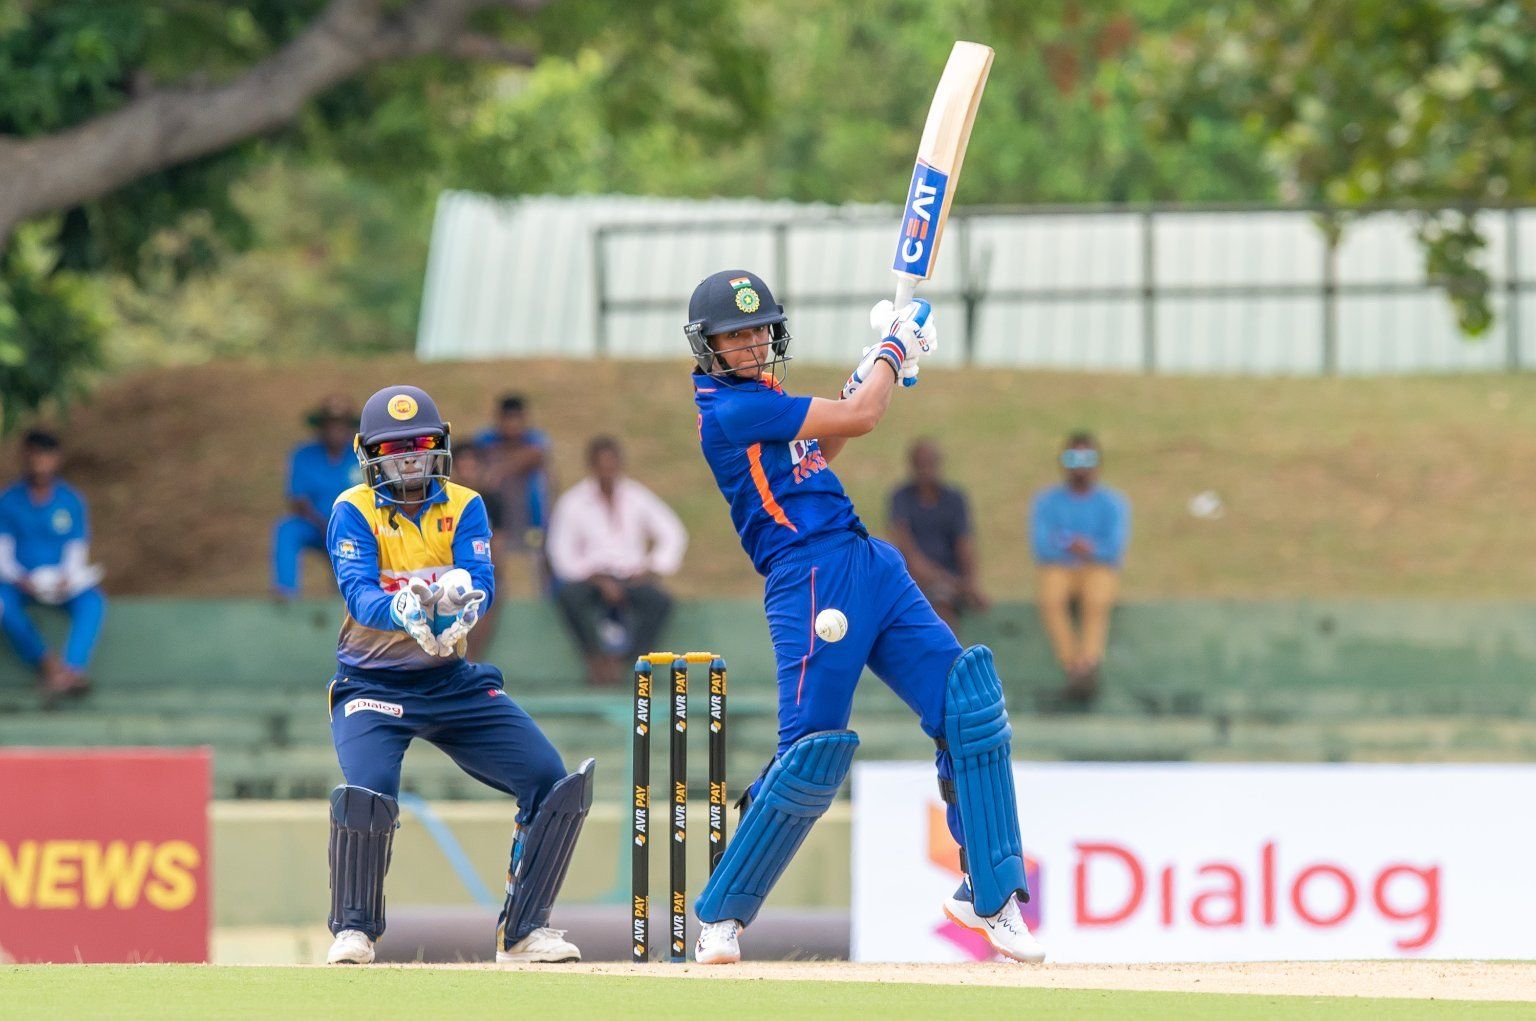 हरमनप्रीत कौर की कप्तानी पारी की बदौलत श्रीलंका को हरा भारत ने टी20 सीरीज पर कब्जा किया